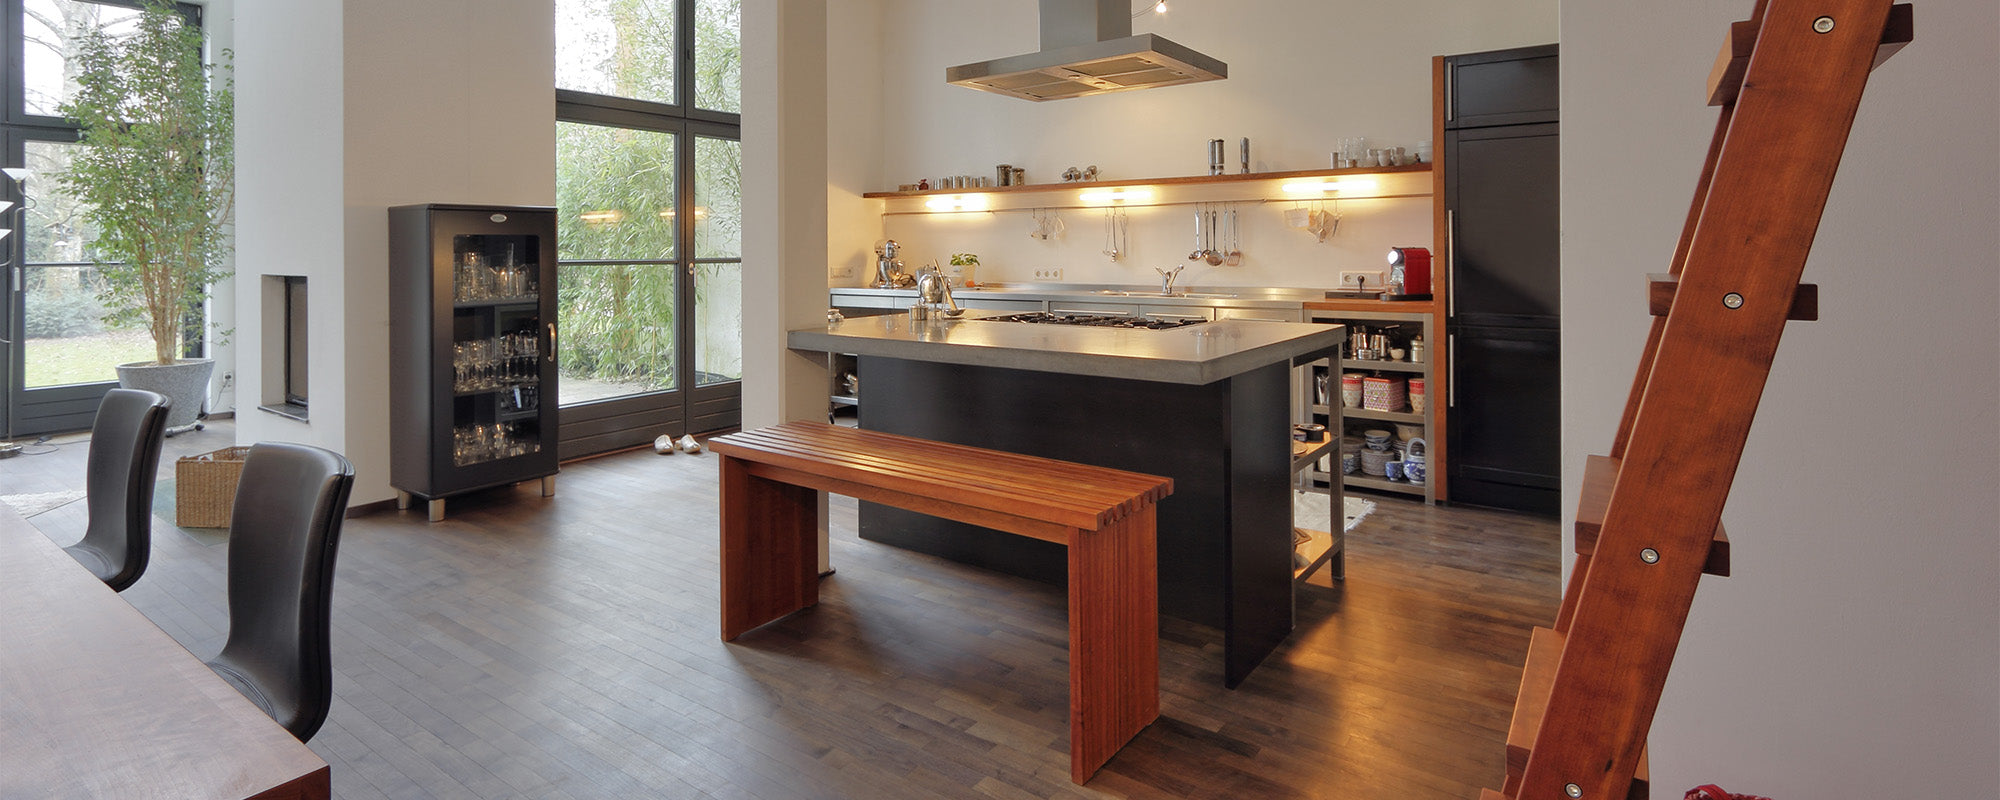 Offene Wohnküche mit Massivholz und einer Arbeitsplatte aus Beton - hochwertige und moderne Massivholzküchen - Küchenplanung vom Innenarchitekt